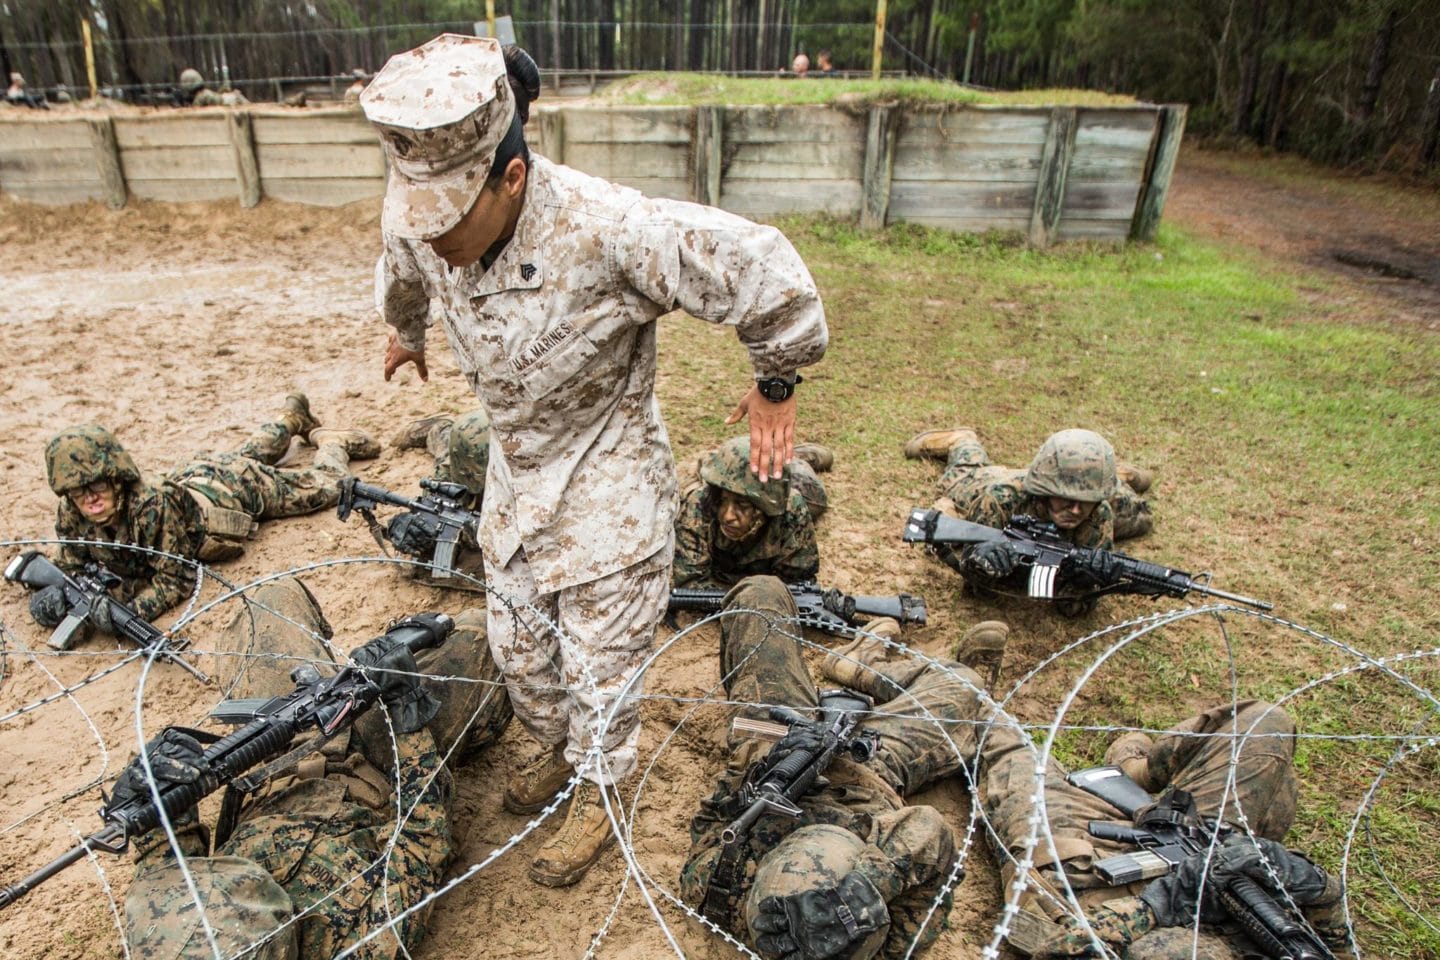 Marine Corps Recruit Training